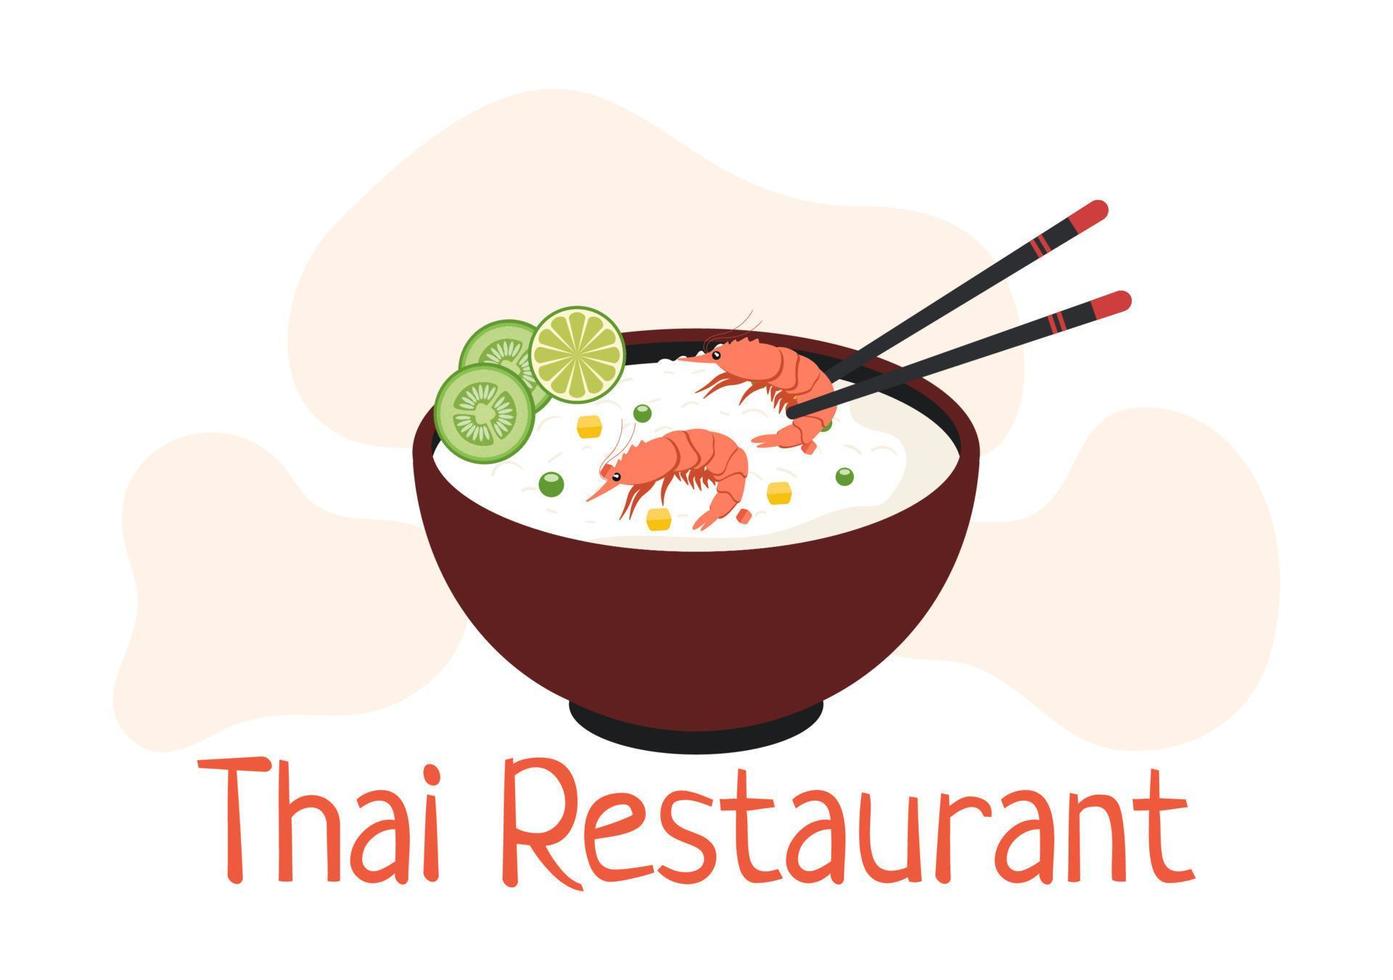 modèle de cuisine traditionnelle thaïlandaise dessin animé illustration dessinée à la main divers de la conception de la cuisine thaïlandaise vecteur